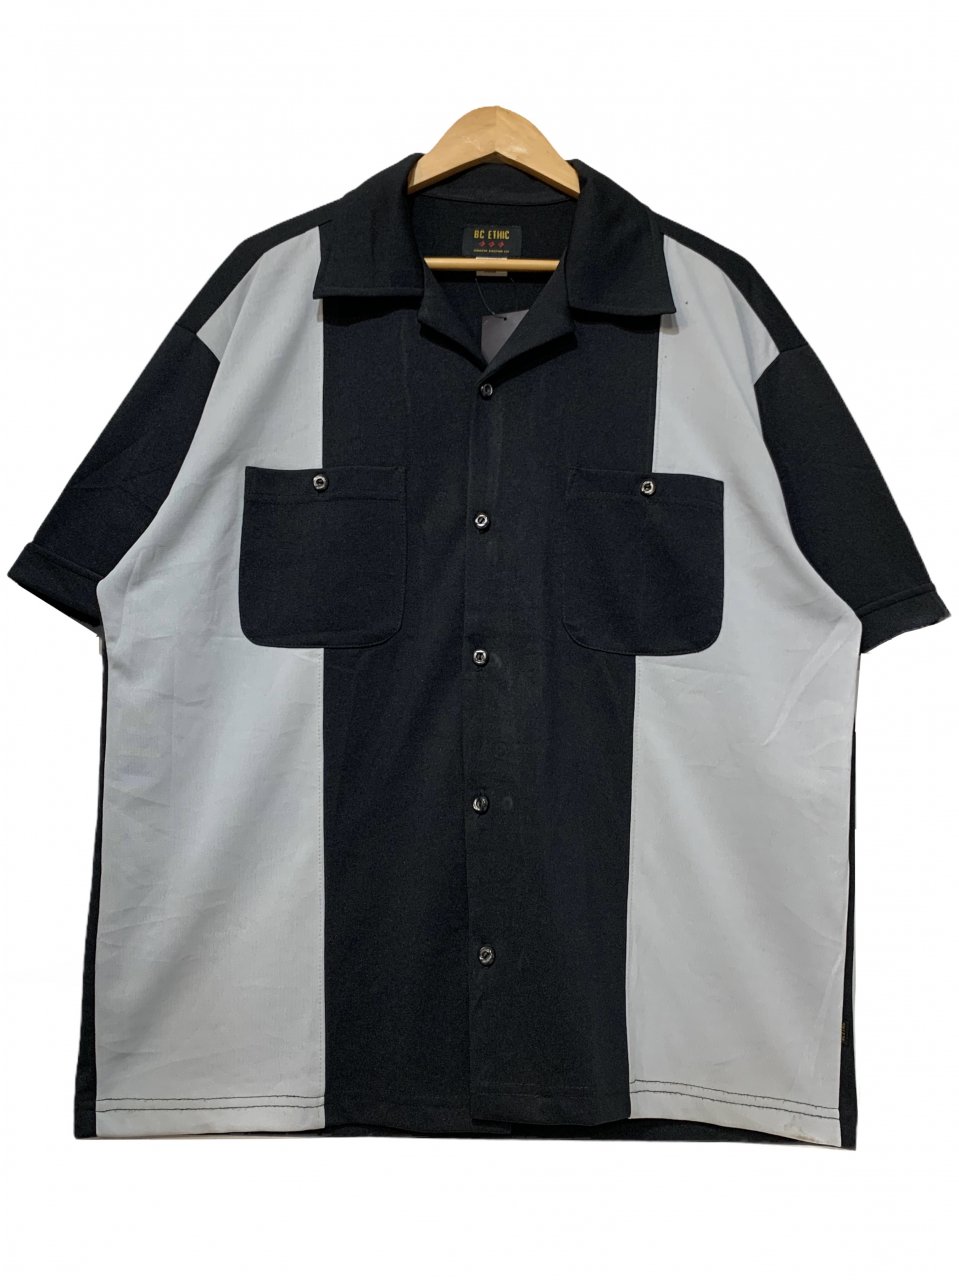 USA製 BC ETHIC Open Collar S/S Shirt 黒 L ビーシーエシック 半袖 